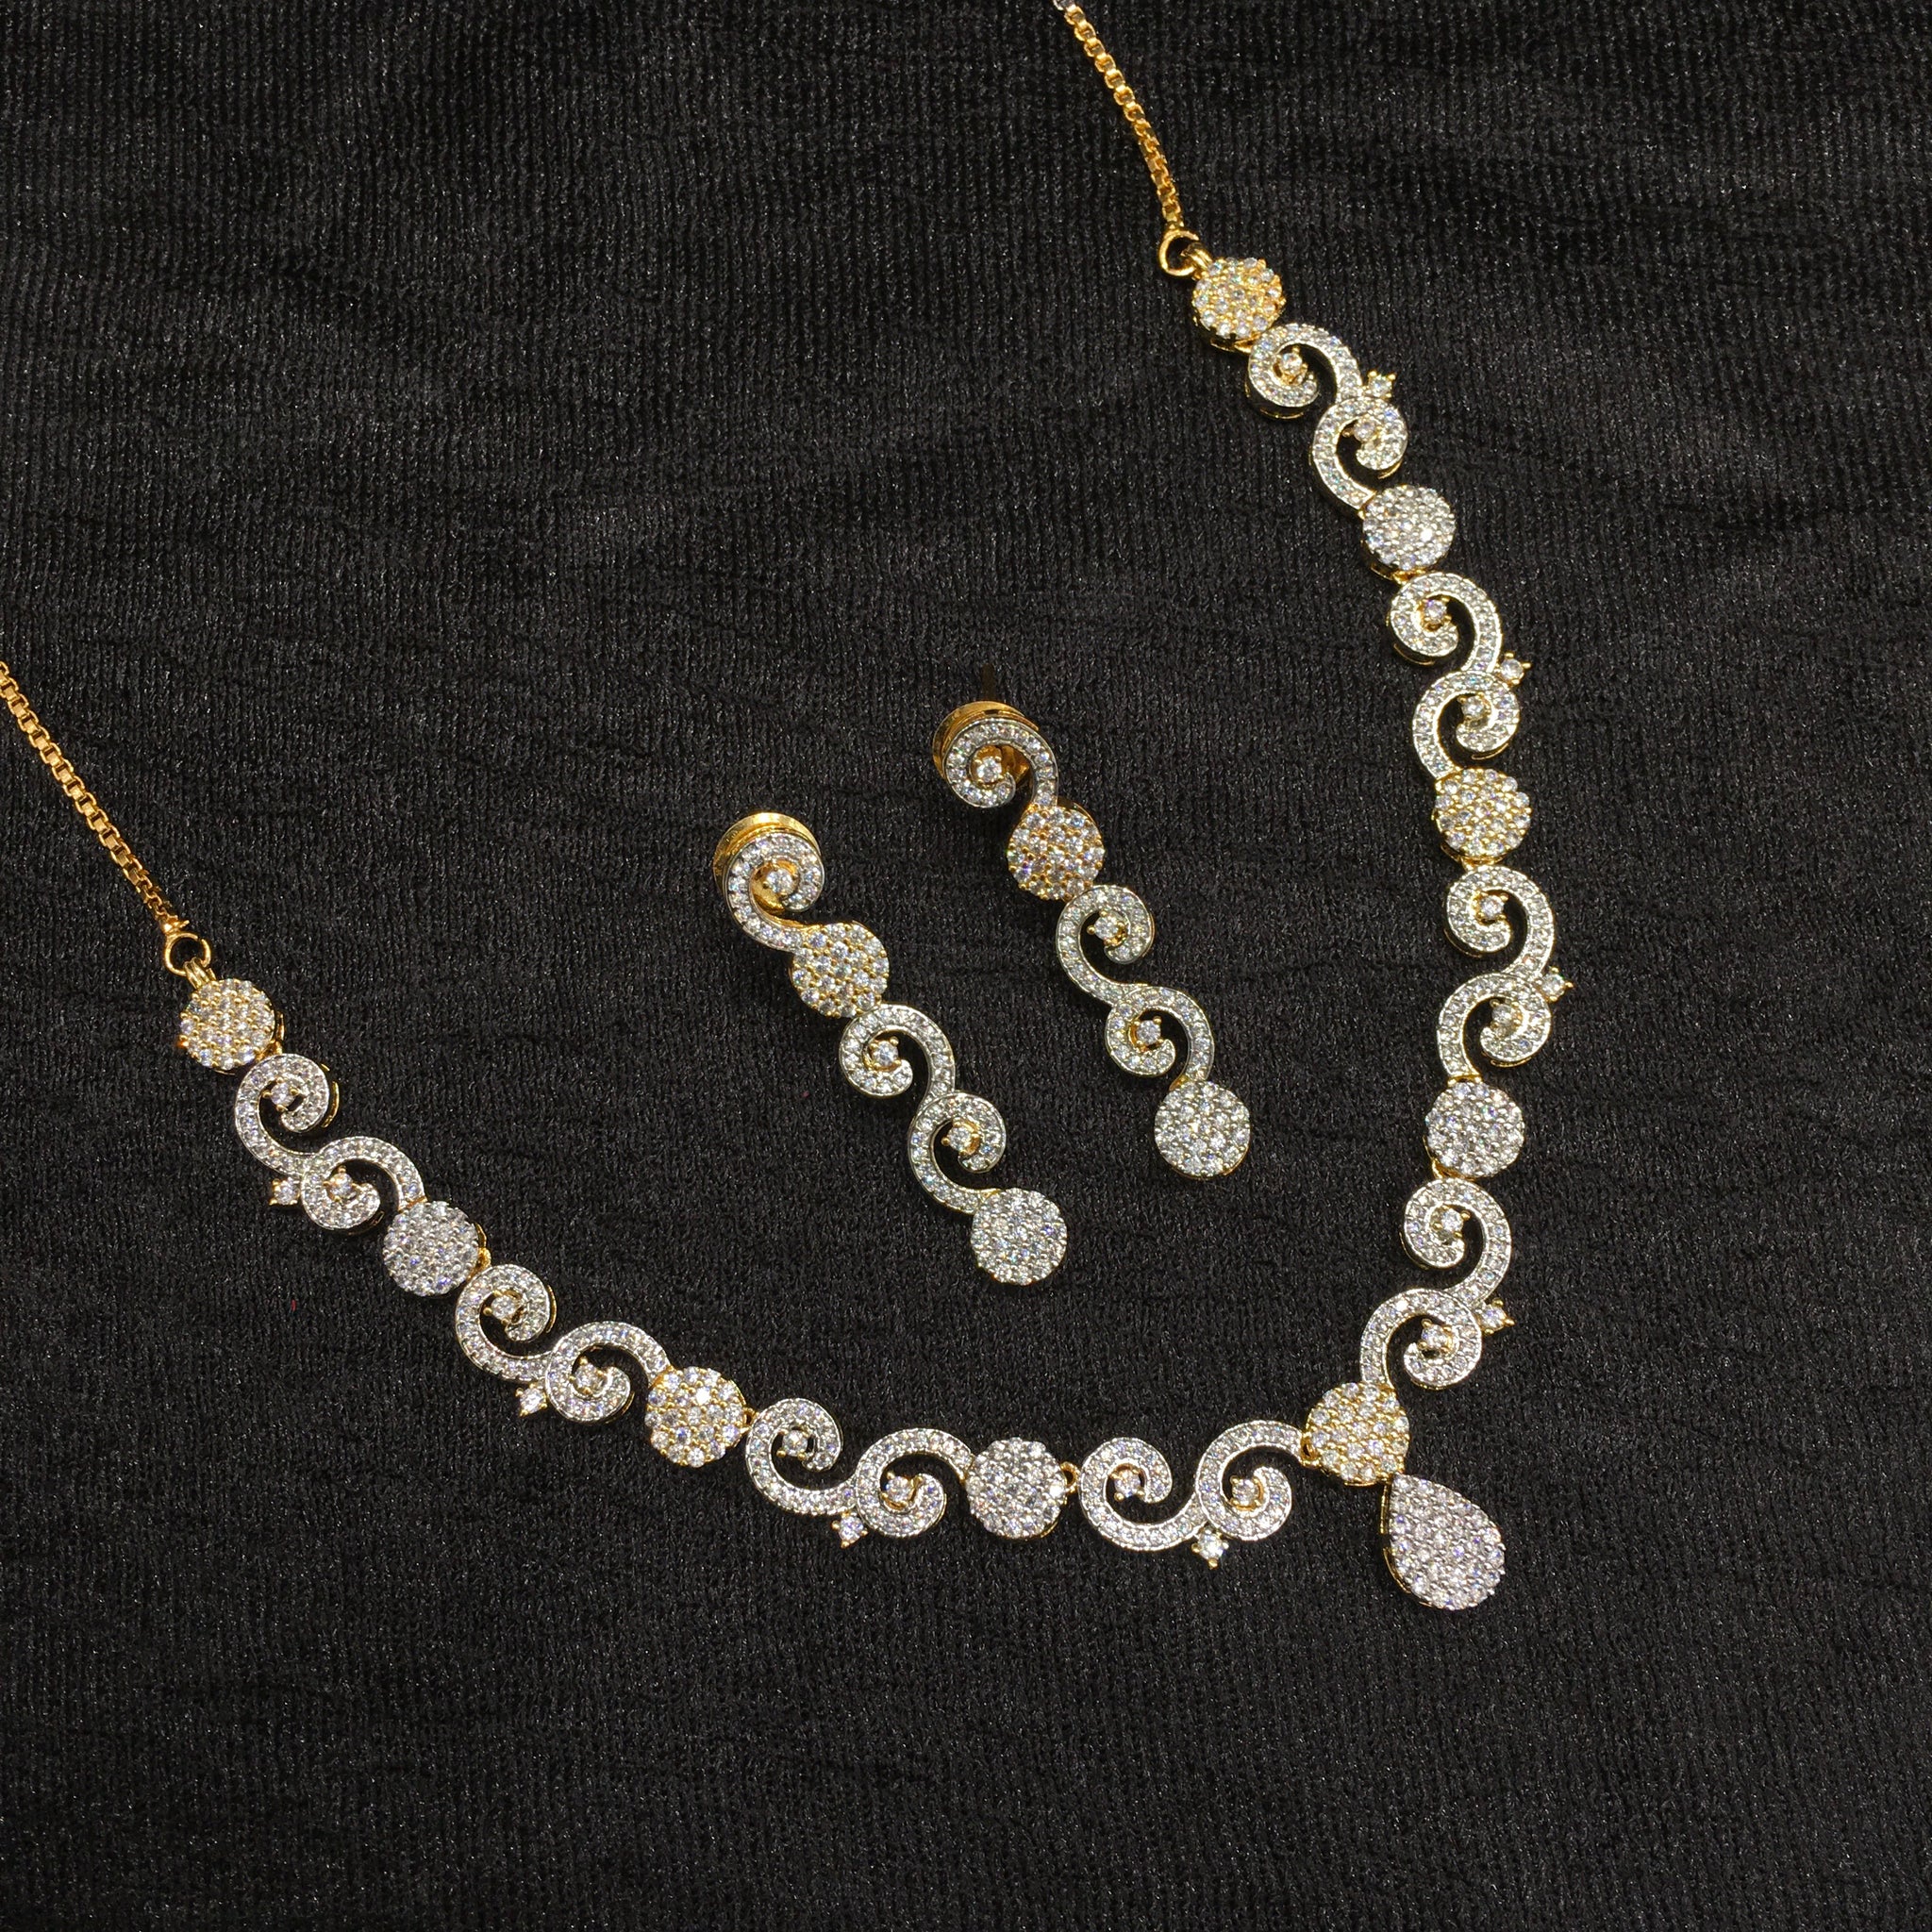 Round Neck Zircon/AD Necklace Set 6212-08 - Dazzles Jewellery